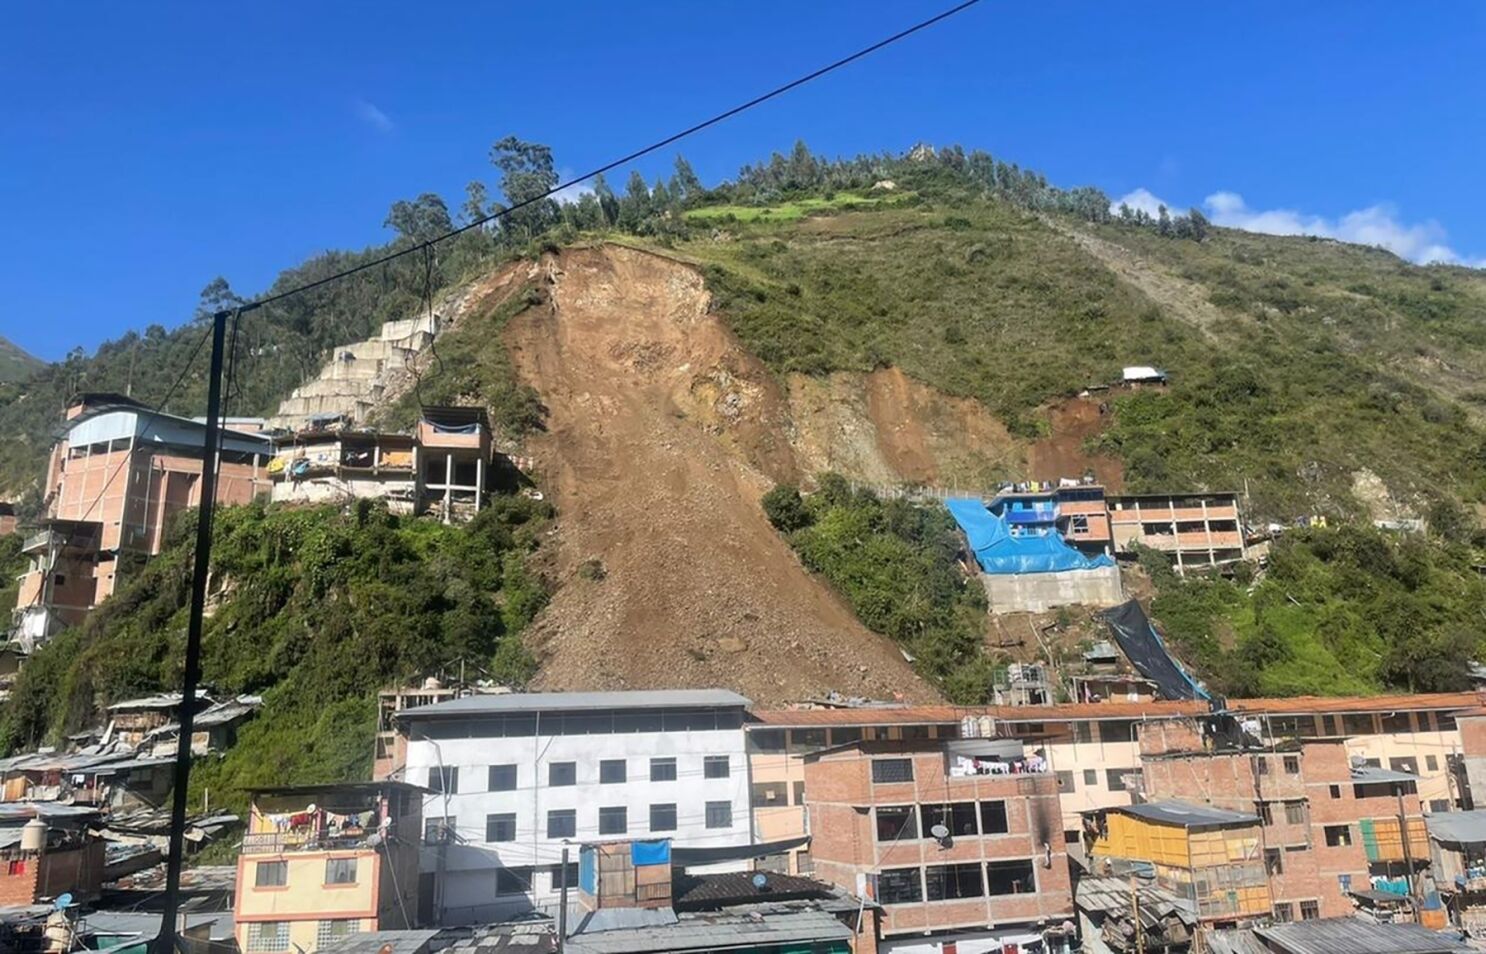 Perú: ladera de cerro se derrumba, 15 desaparecidos - San Diego  Union-Tribune en Español